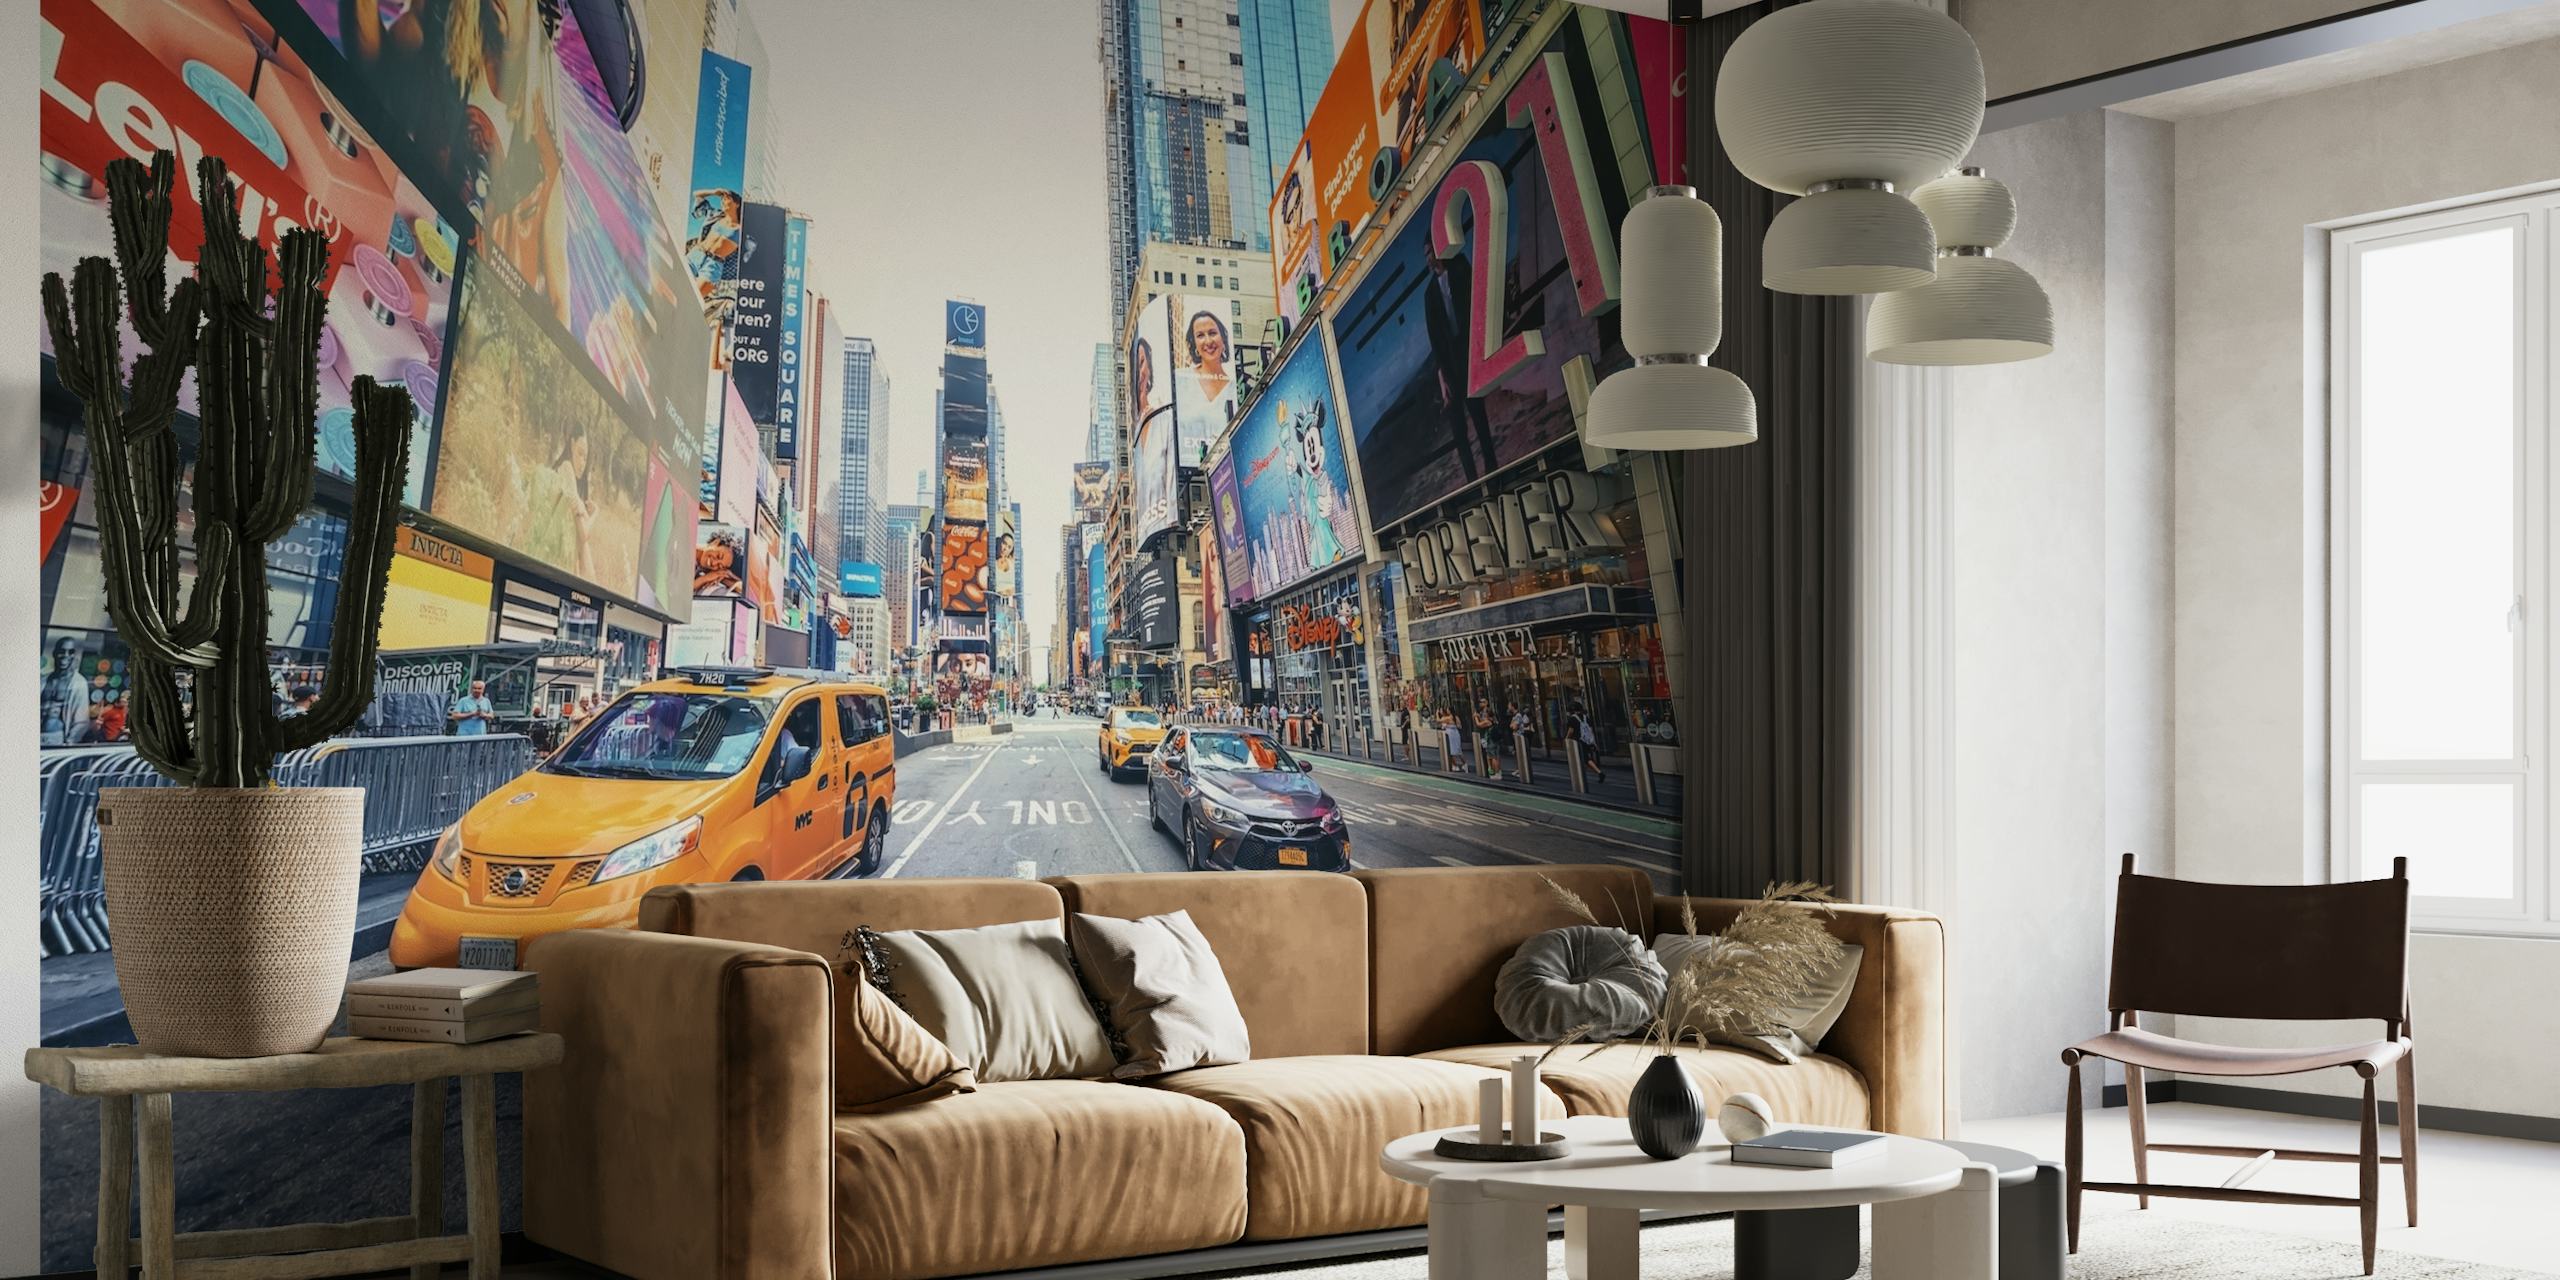 Fototapeta na Times Square przedstawiająca tętniące życiem miasto z taksówkami i billboardami.